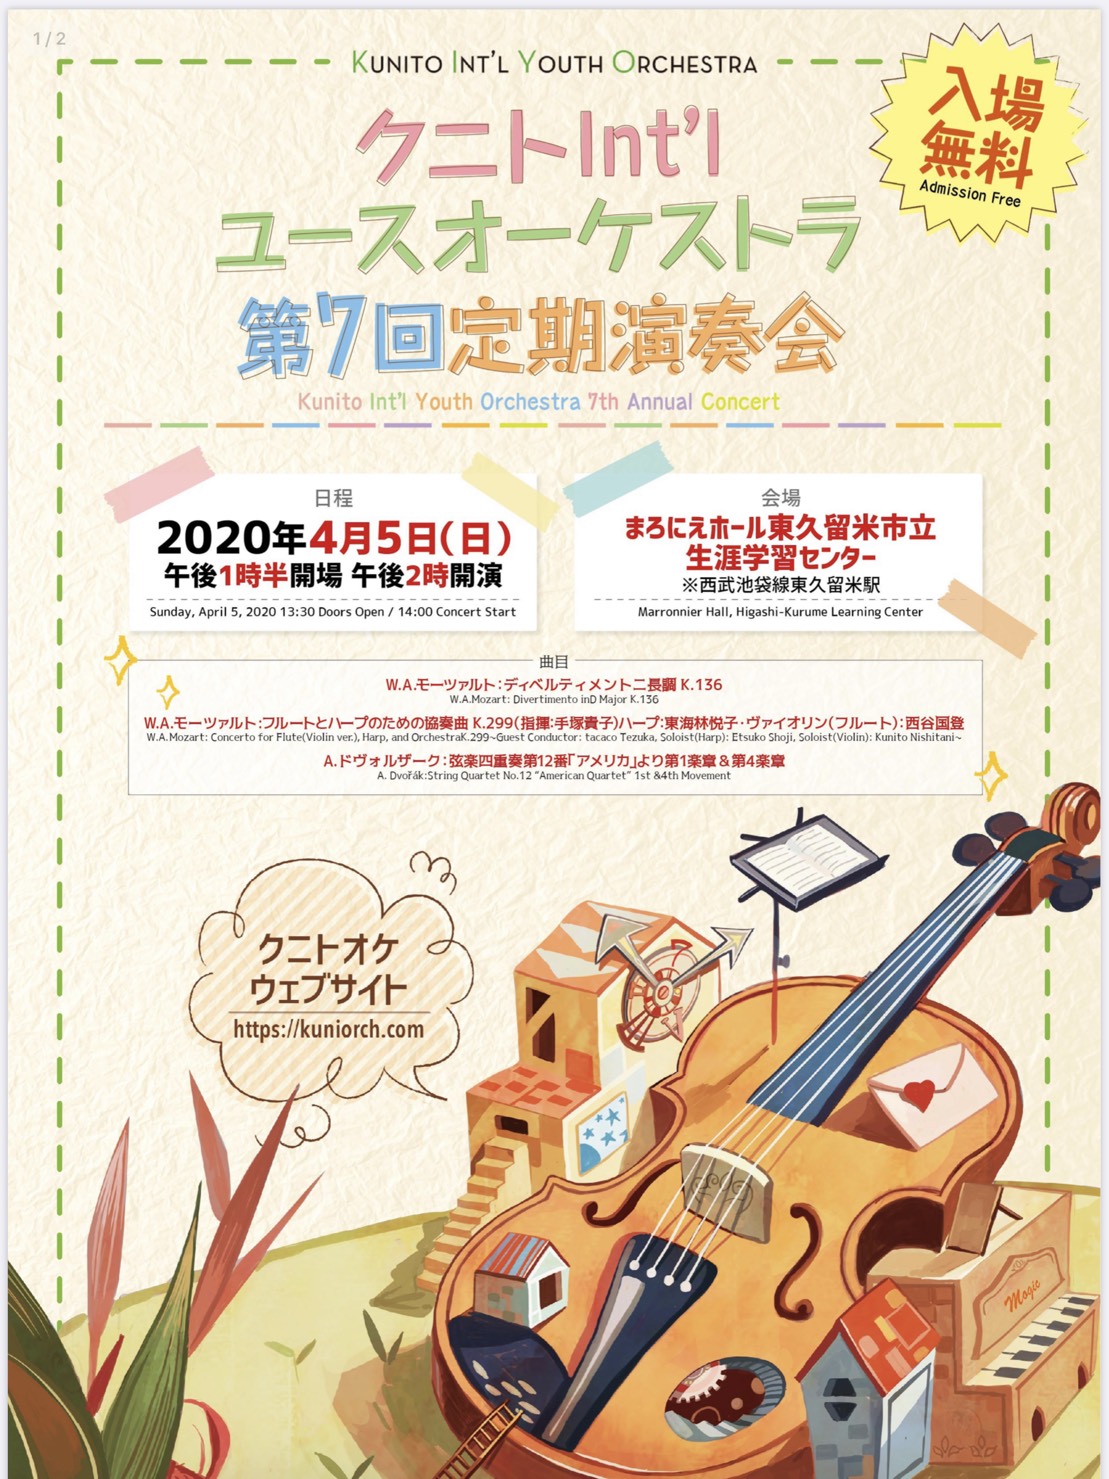 コンサート情報 公式 クニトint Lユースオーケストラ In 東京 練馬 石神井